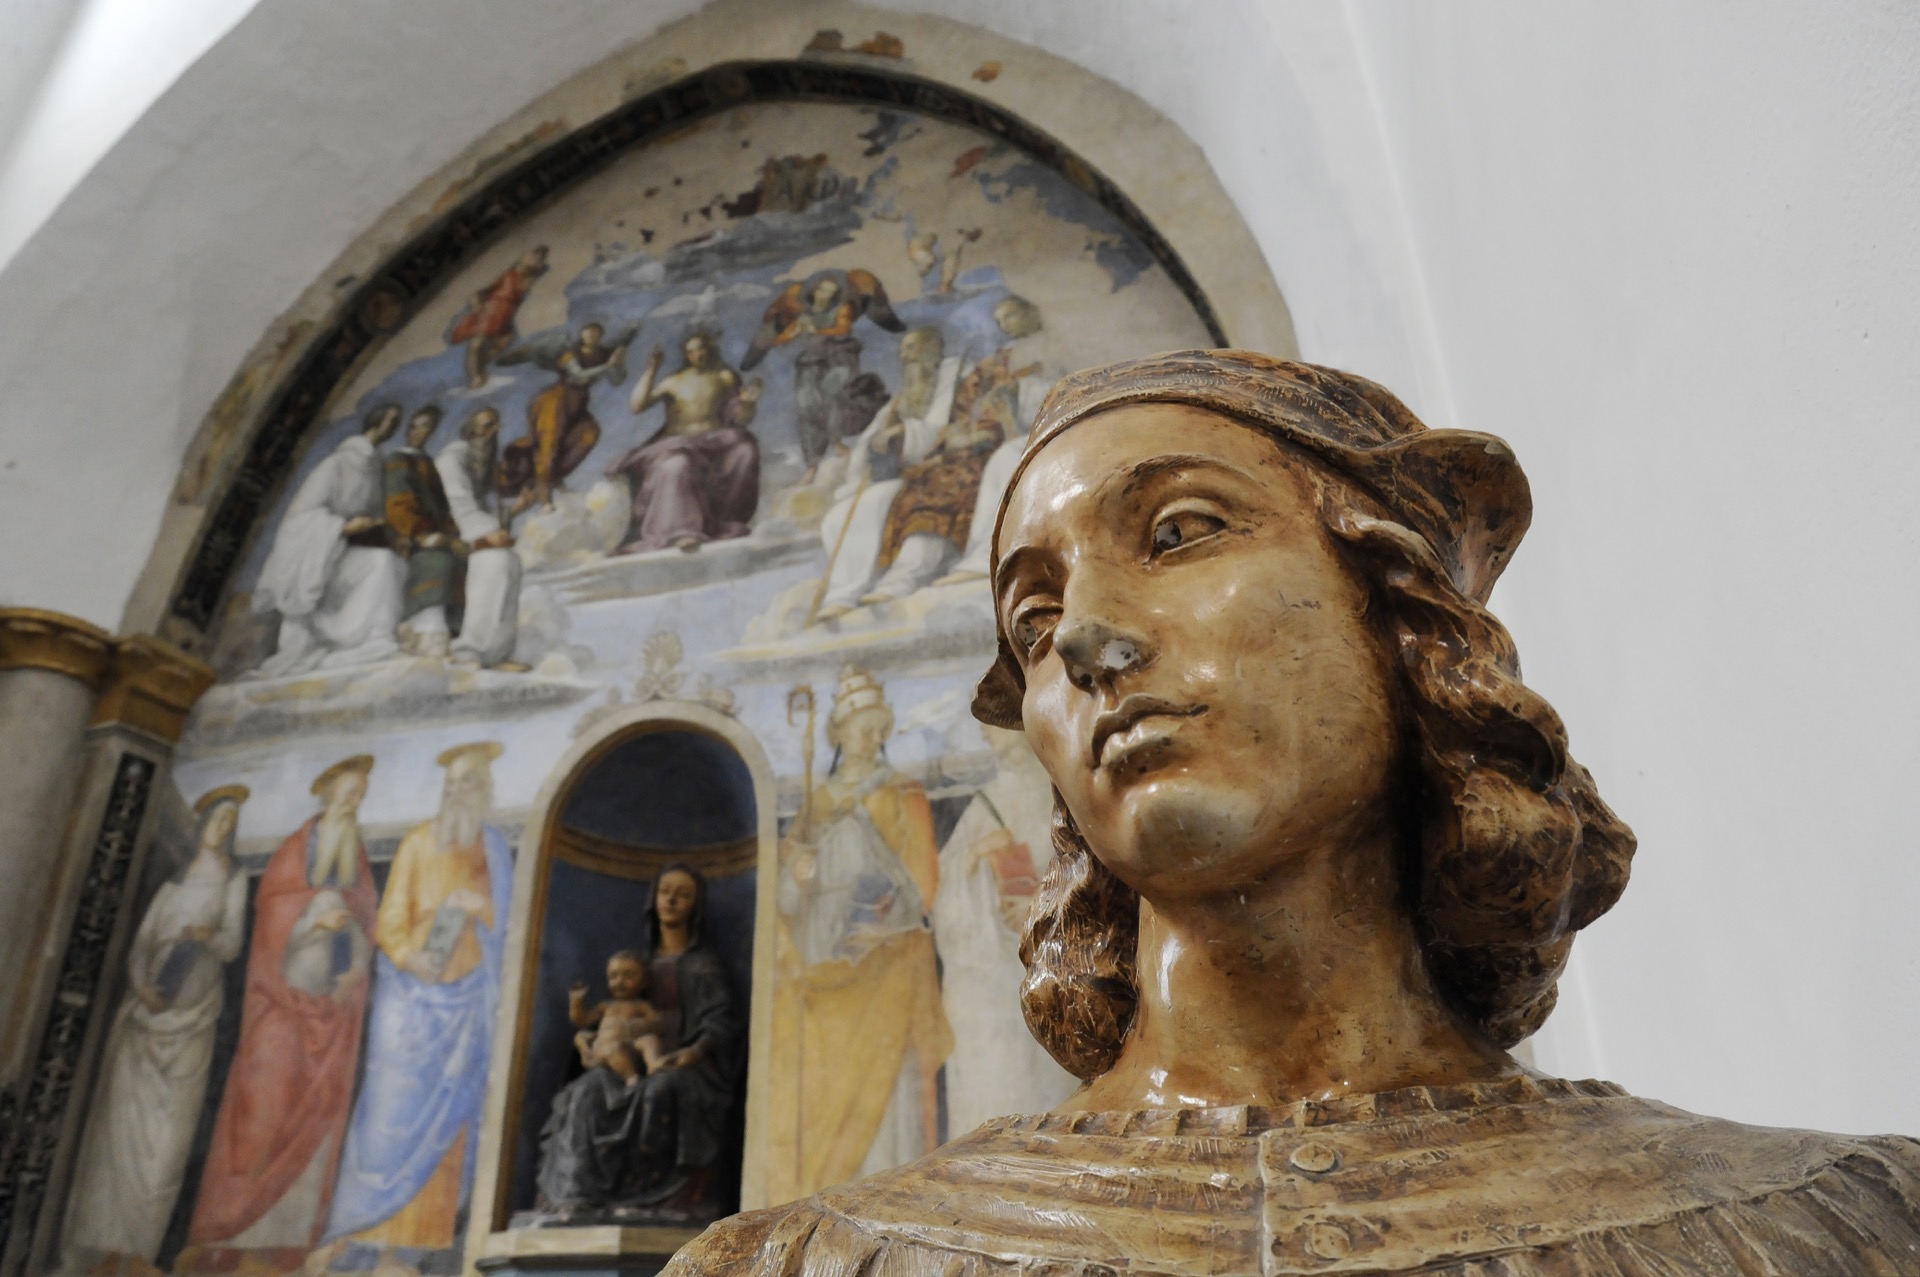 Le buste de Raffaello Sanzio, dit Raphaël. En arrière-plan, l'une de ses fresques. Chapelle de San Severo, Pérouse, Italie. © Davide Zanin, Adobe Stock